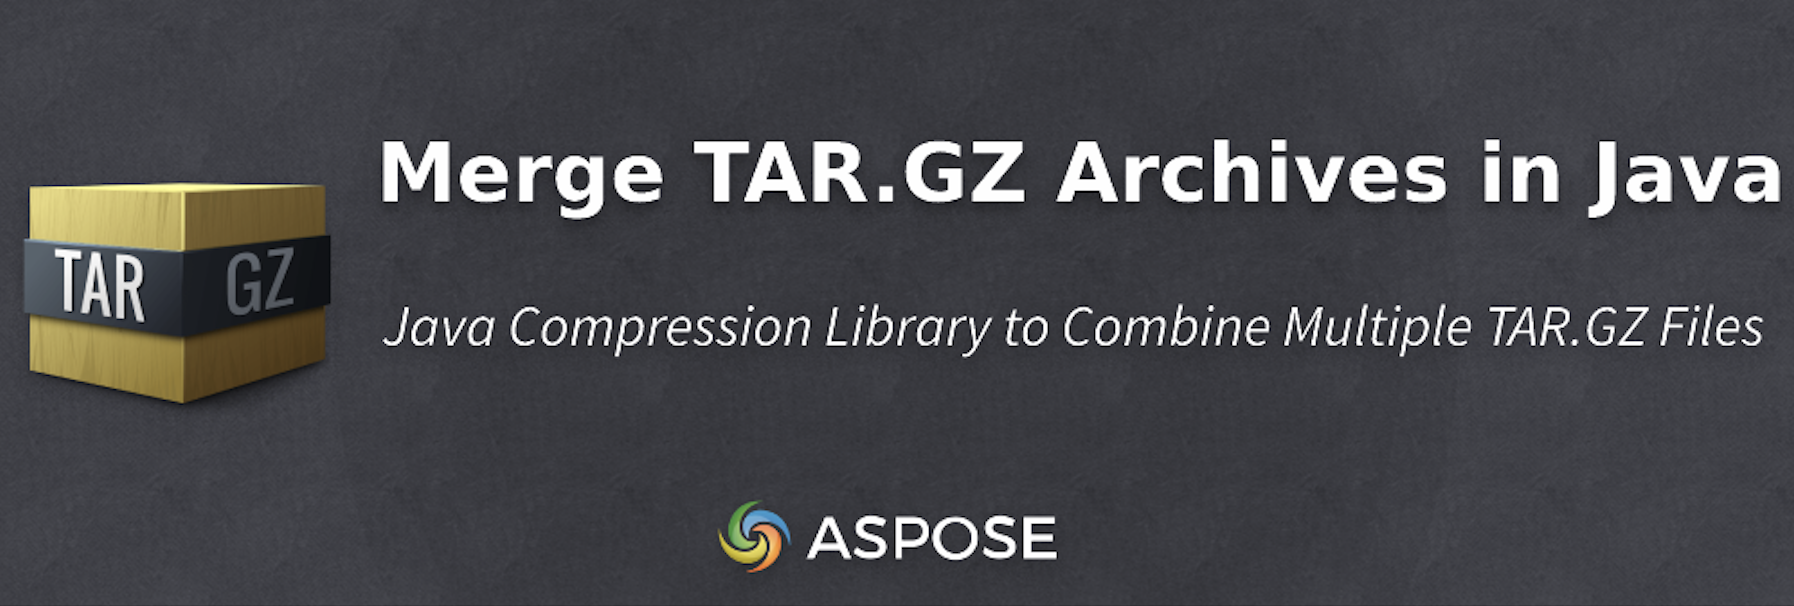 Gabungkan Arsip TAR.GZ di Java Secara Terprogram